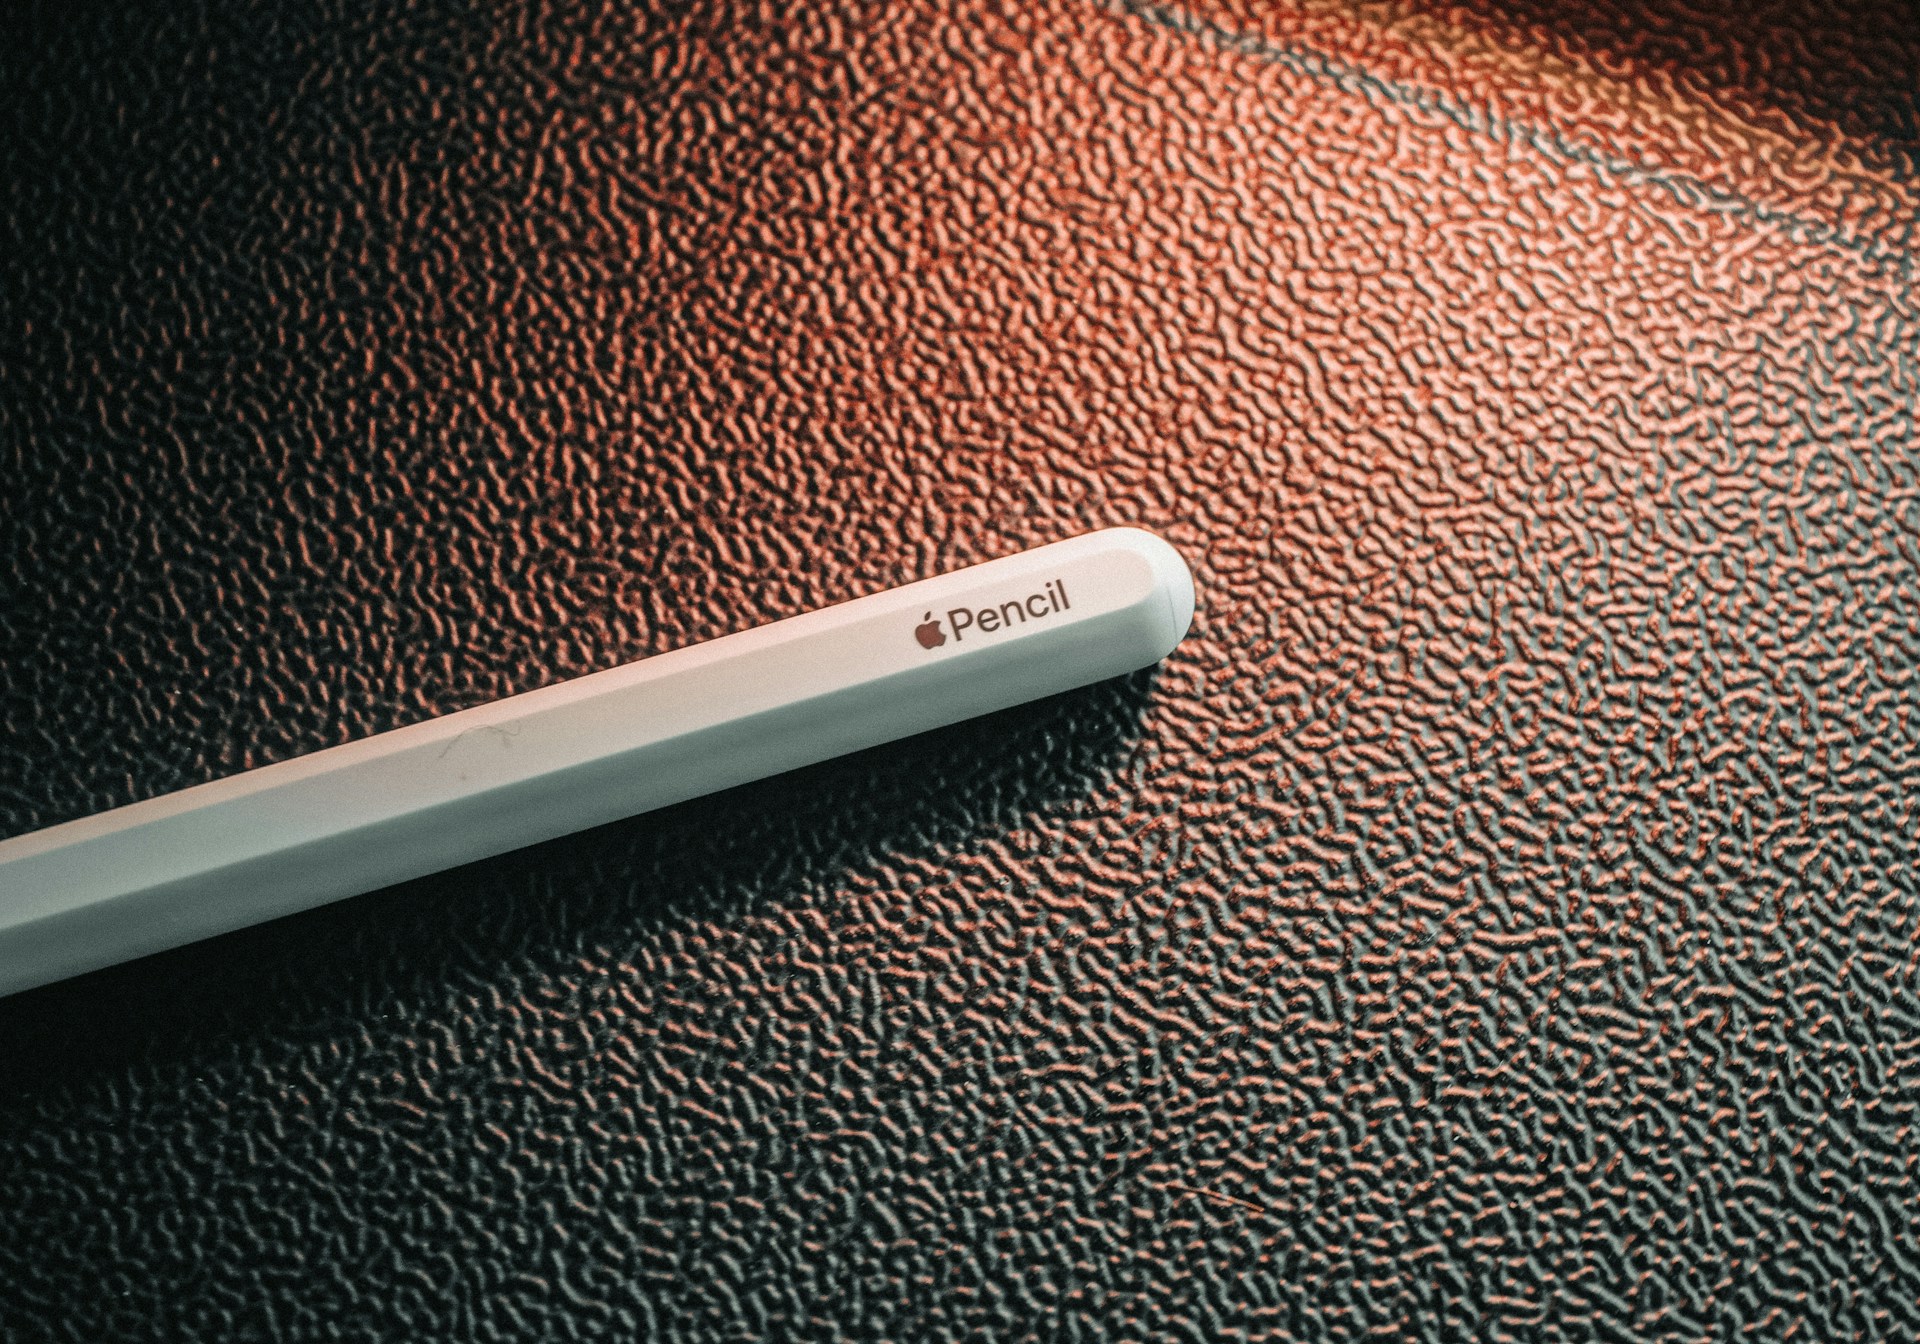 Apple Pencil 3 Rumors: A Glimpse into the Future